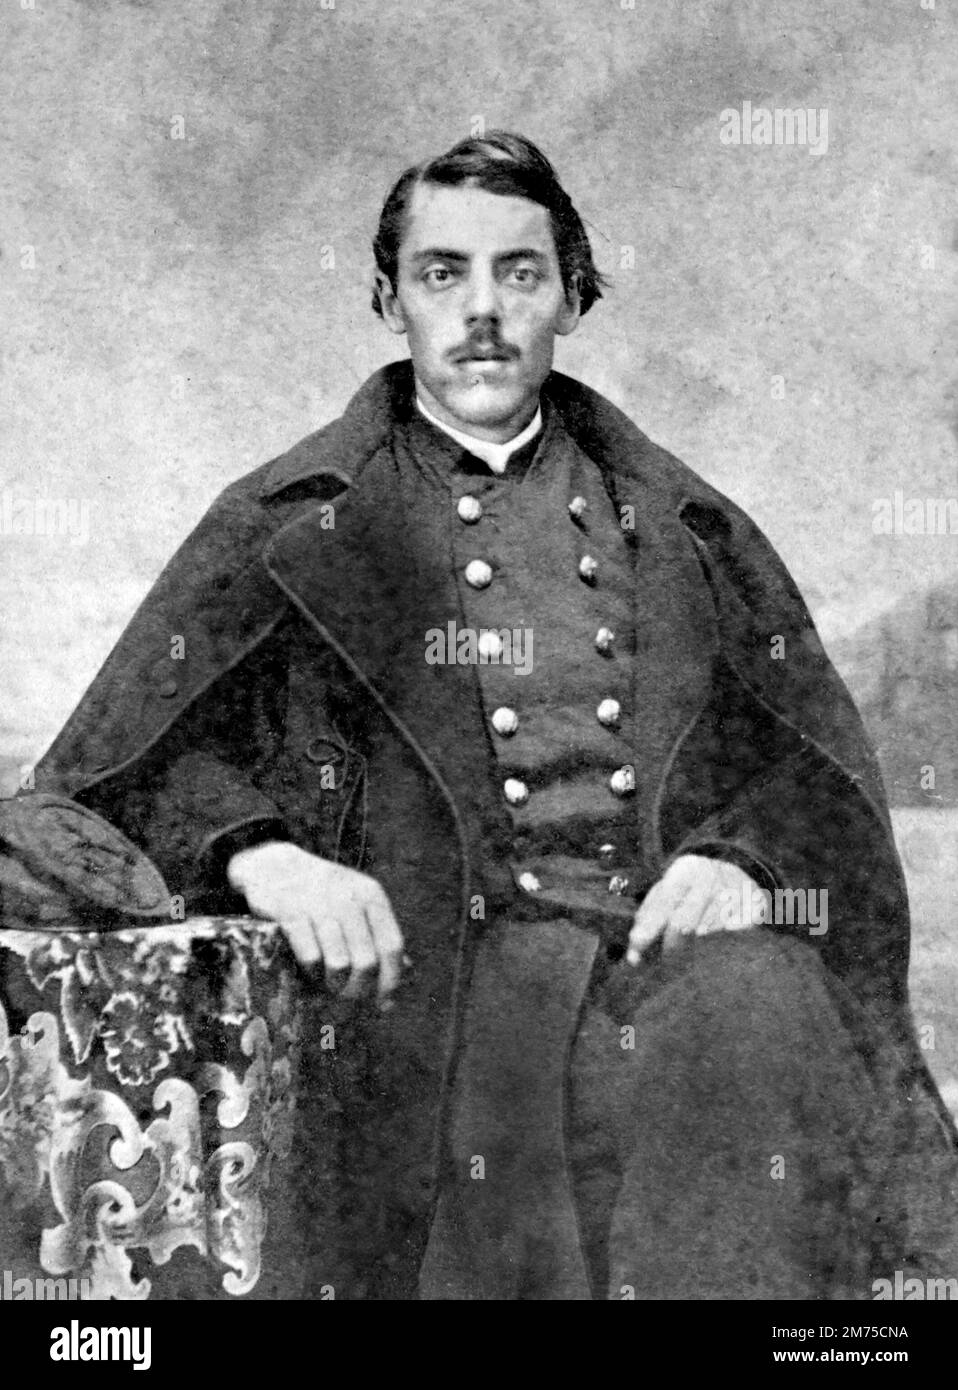 Eli Lilly. Ritratto del soldato, chimico e uomo d'affari, Eli Lilly (1838-1898), come maggiore nell'esercito dell'Unione durante la guerra civile americana, nel 1861-65 Foto Stock